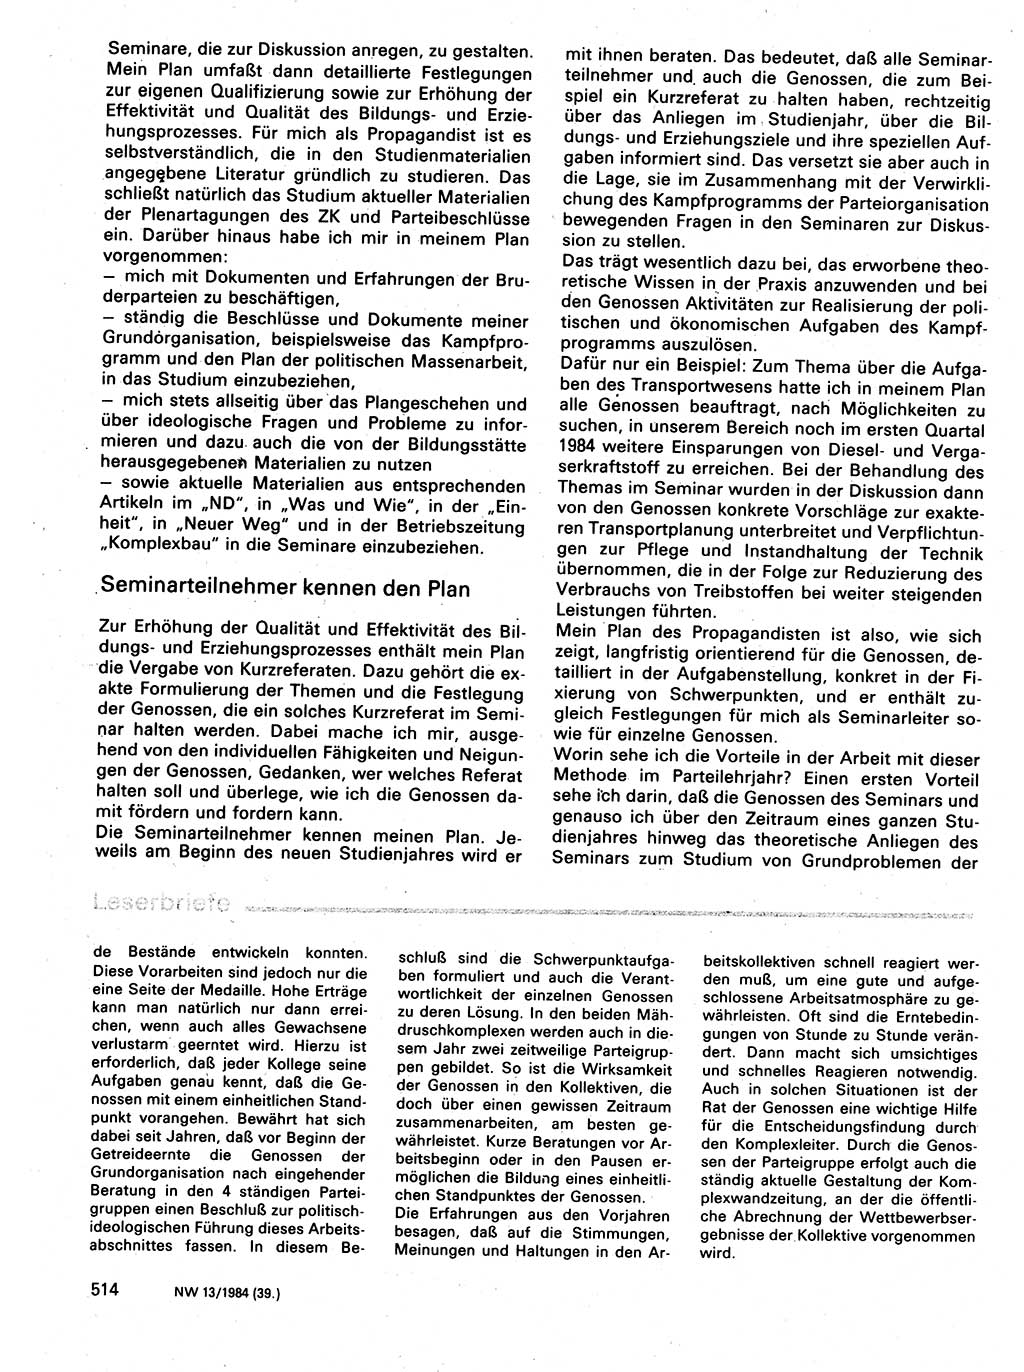 Neuer Weg (NW), Organ des Zentralkomitees (ZK) der SED (Sozialistische Einheitspartei Deutschlands) für Fragen des Parteilebens, 39. Jahrgang [Deutsche Demokratische Republik (DDR)] 1984, Seite 514 (NW ZK SED DDR 1984, S. 514)